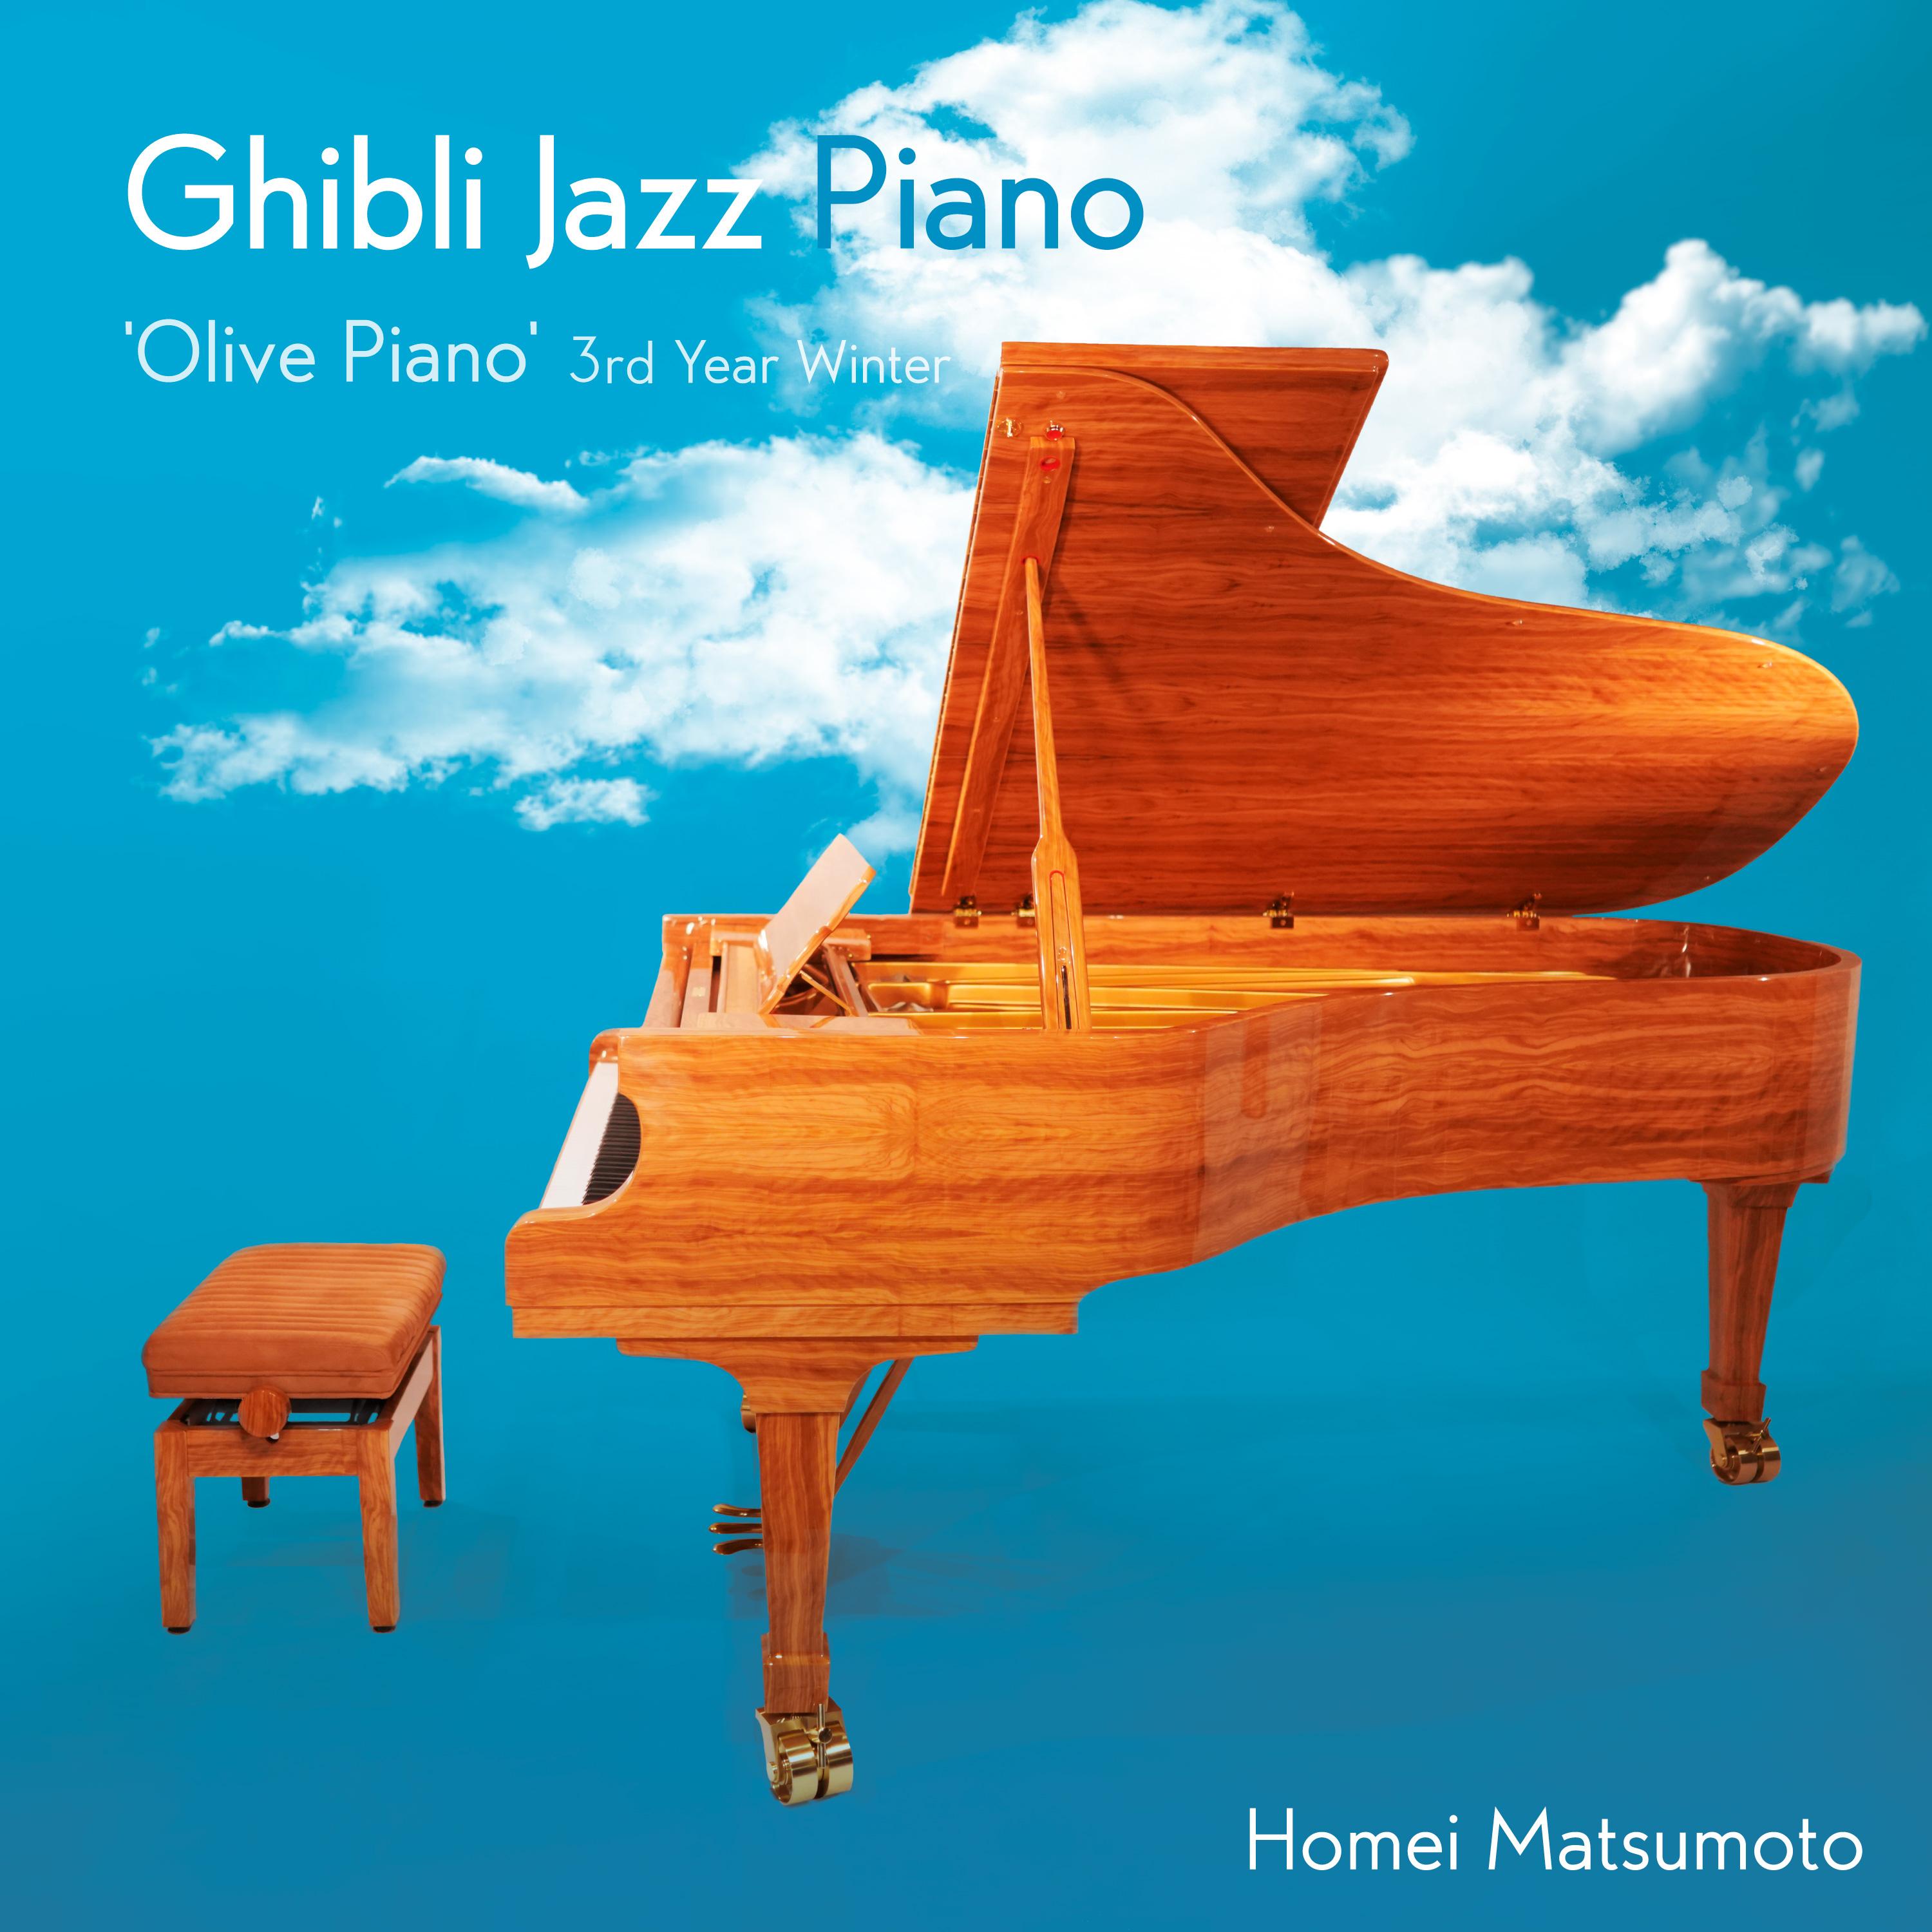 ジブリ・ジャズ・ピアノ -'Olive Piano' 3rd Year Winter